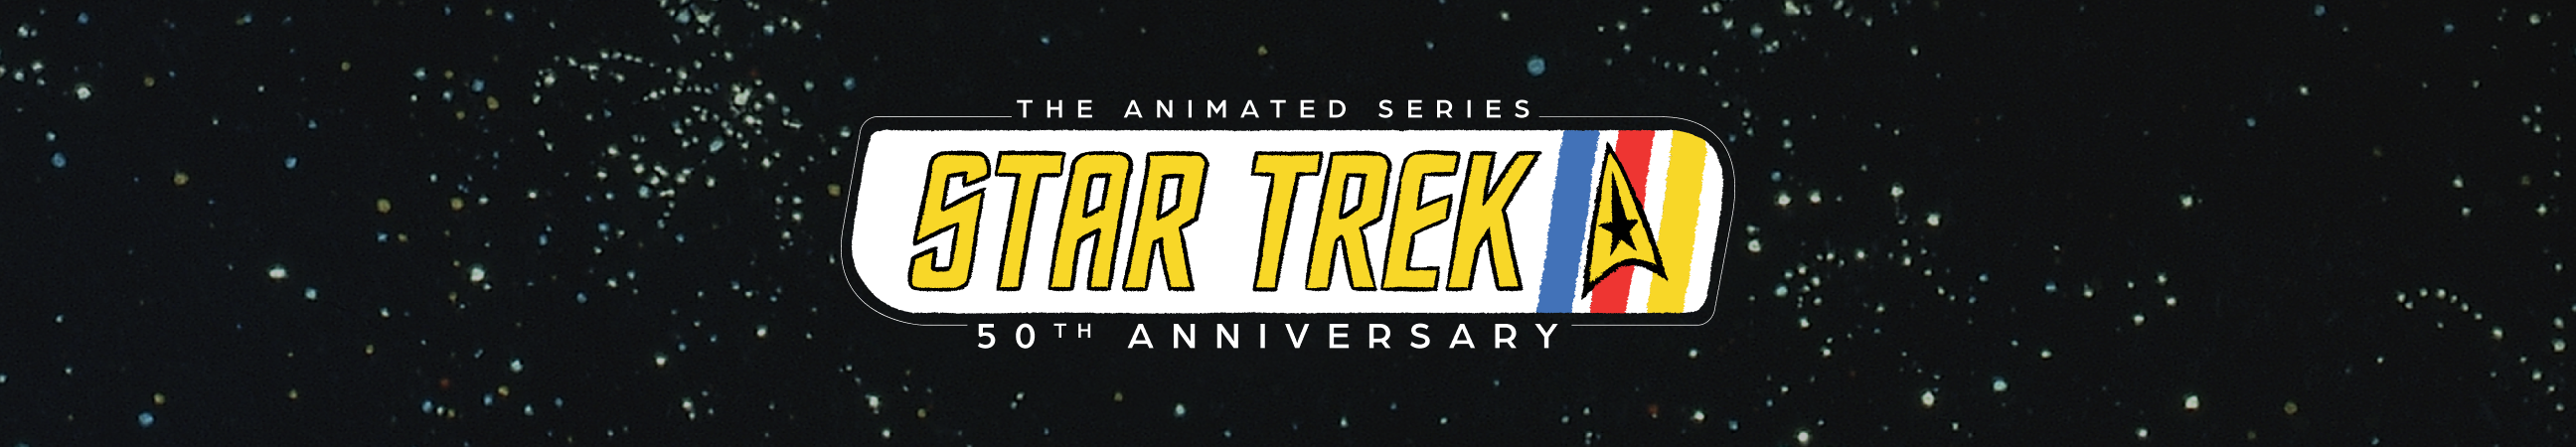 Star Trek: 50 aniversario de la serie animada